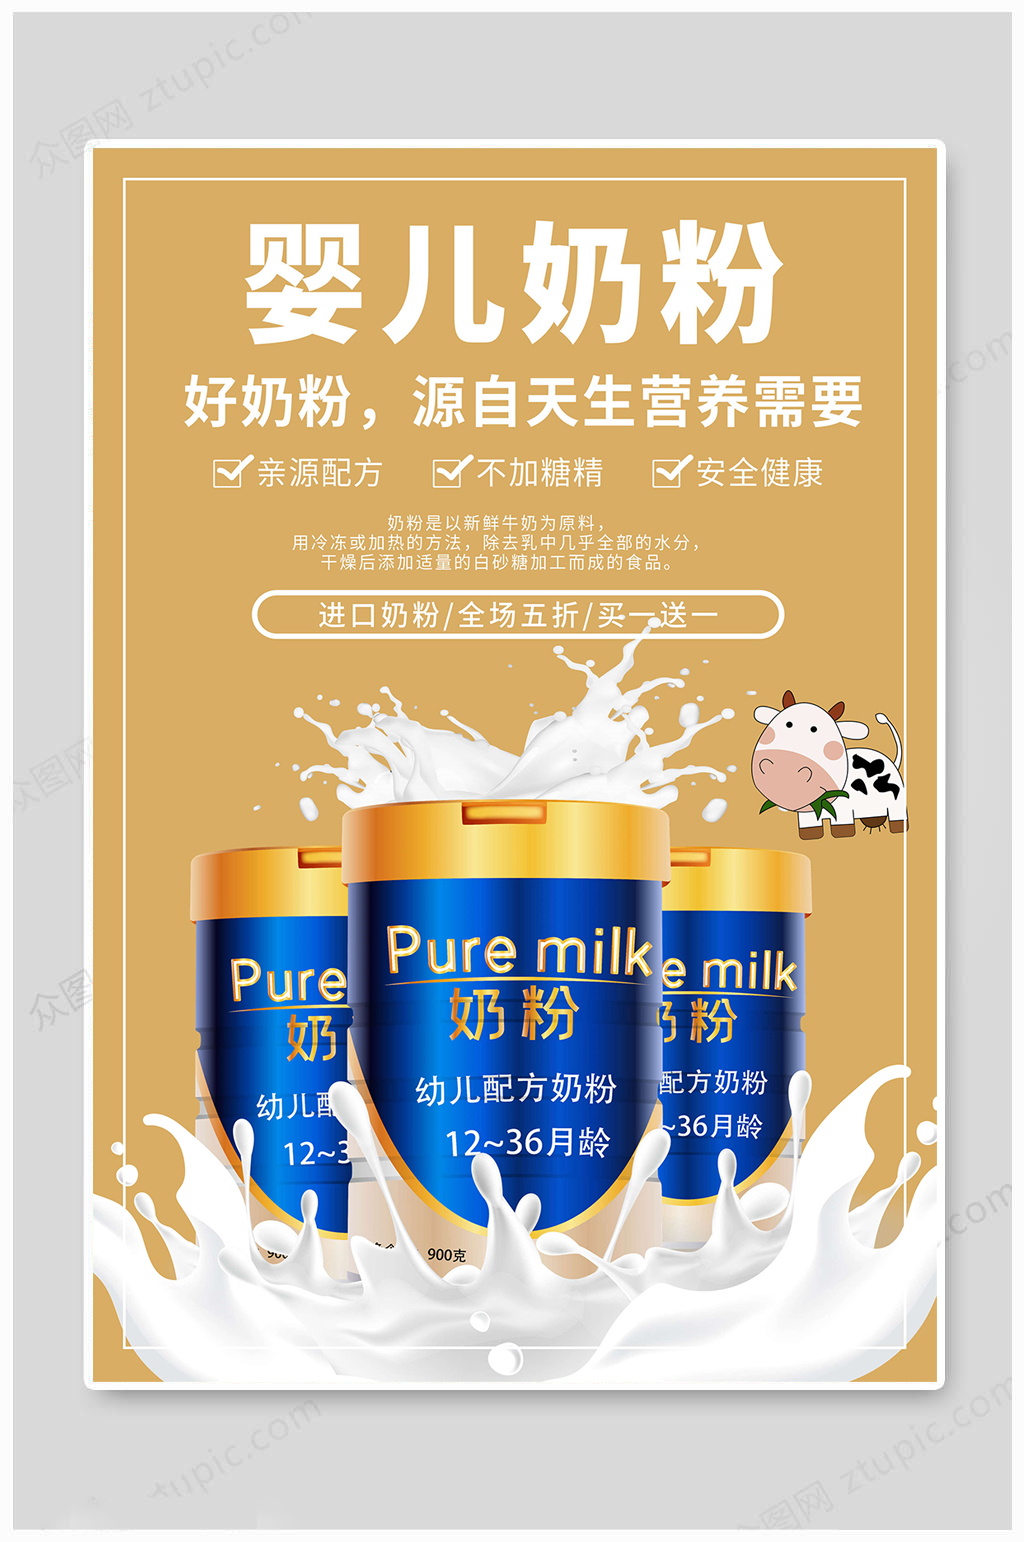 奶粉展架易拉宝立即下载创意健康纯牛奶海报健康美味纯牛奶海报高端防